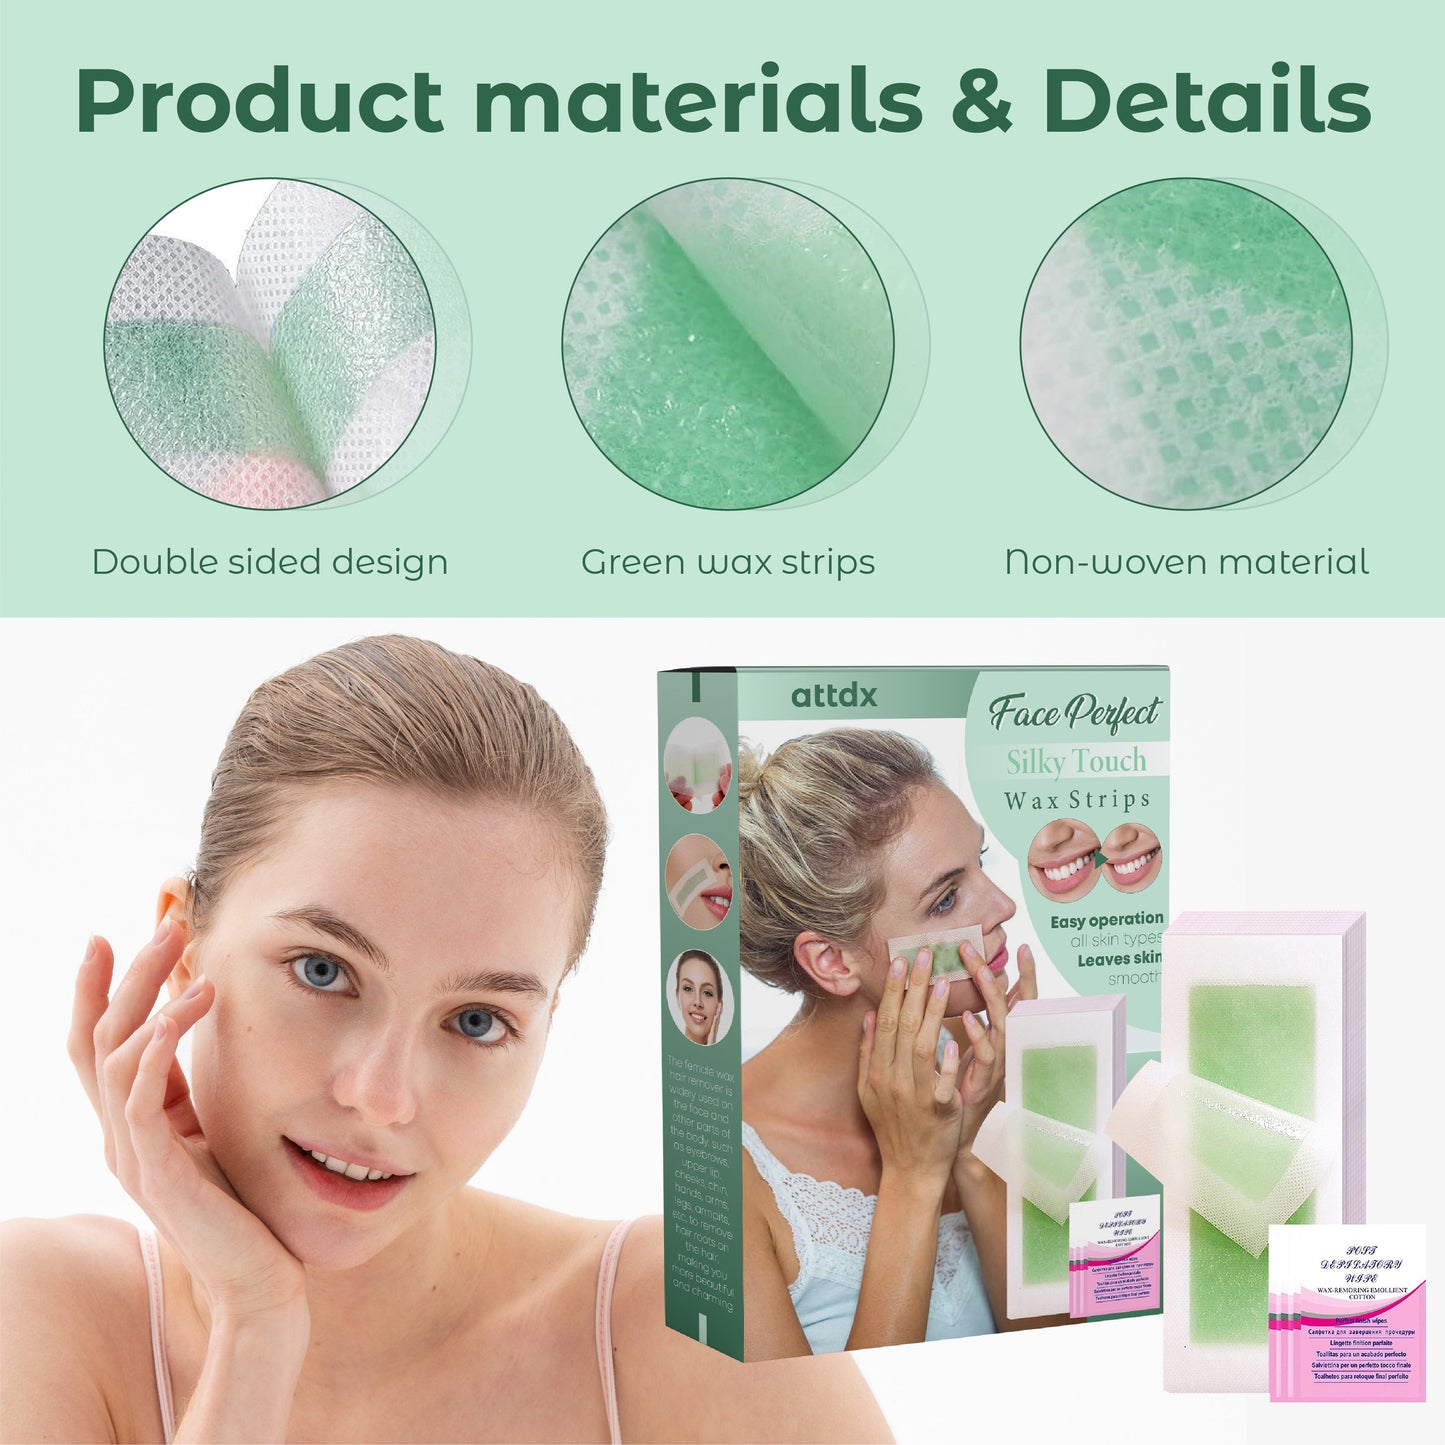 ATTDX 2 FacePerfect Precise Area Facial Wax Strips